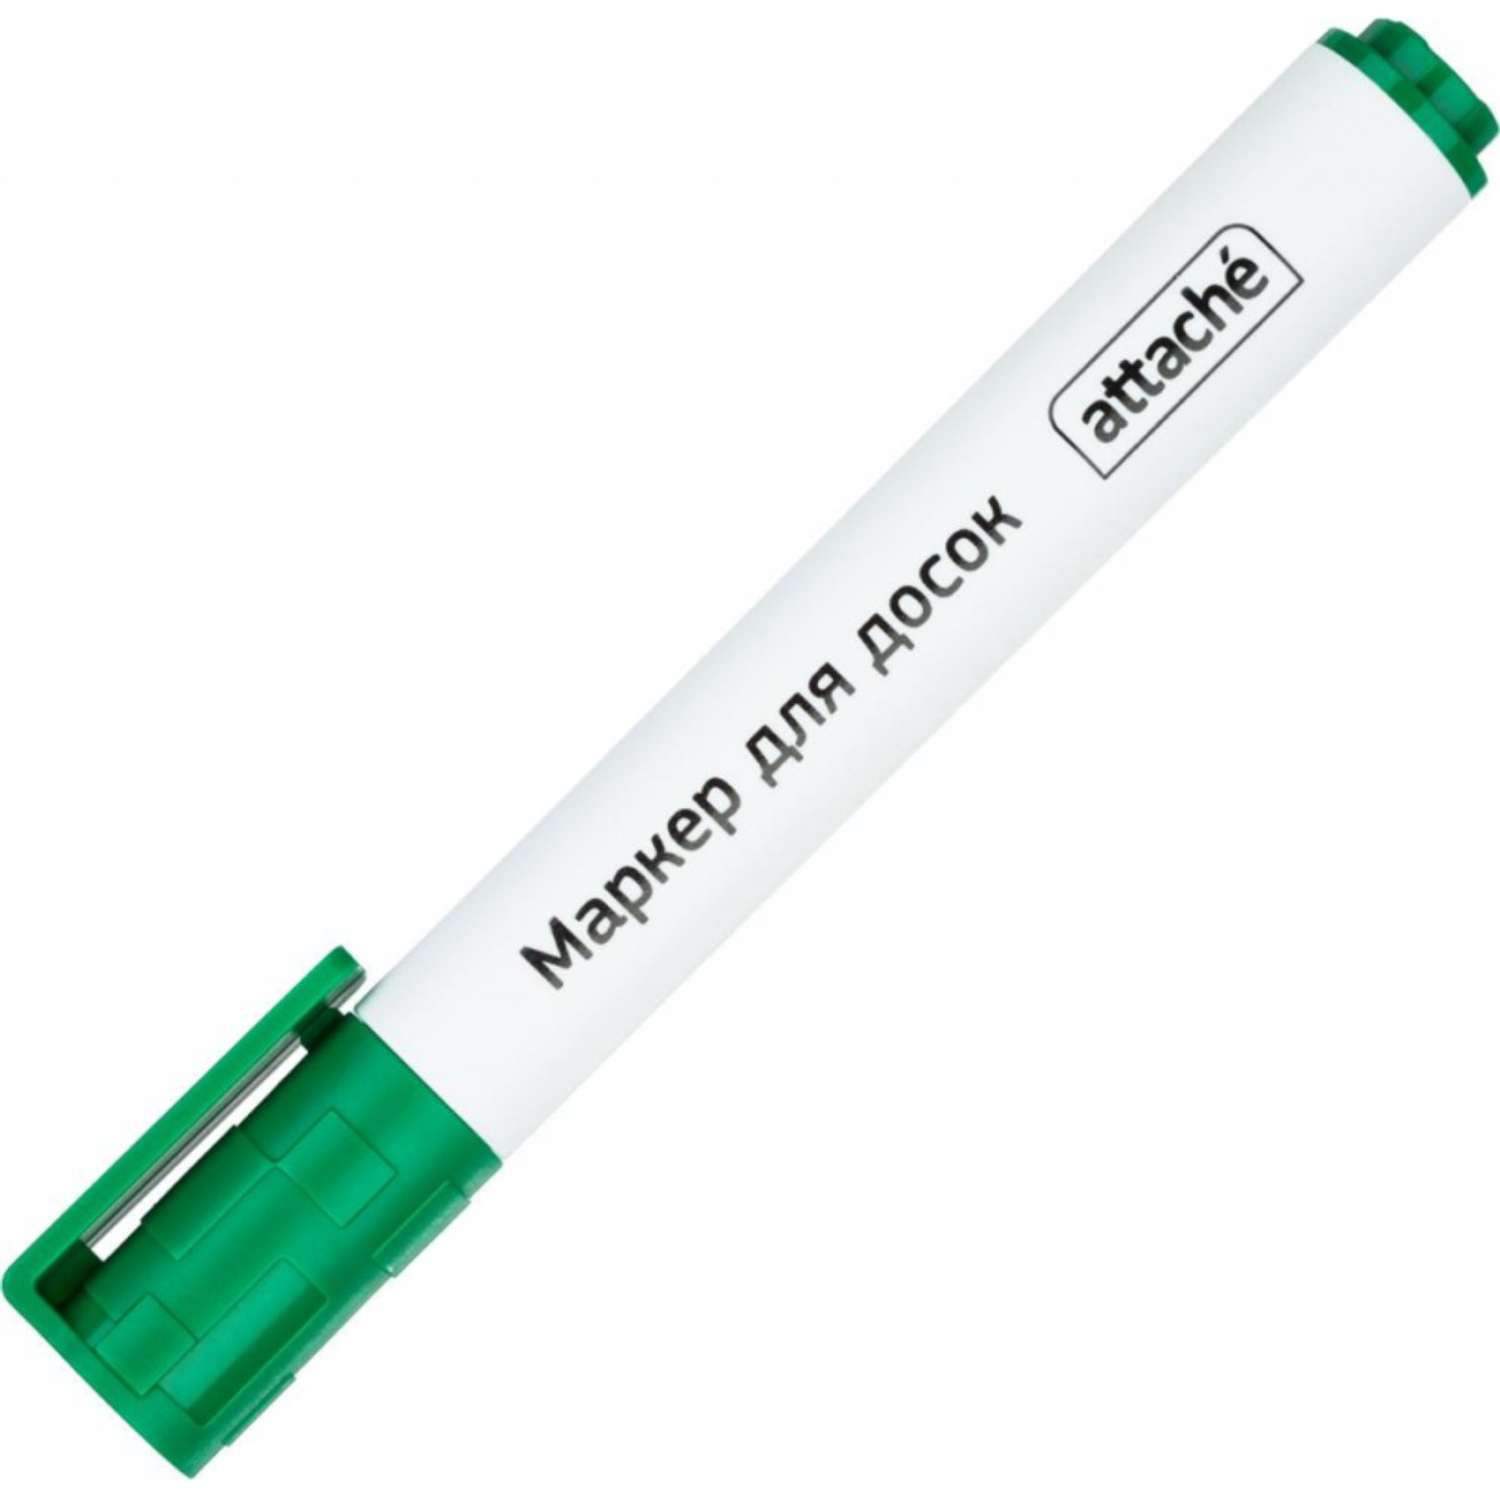 Маркер для досок Attache зеленый со скошенным наконечником 1-5мм 15 шт - фото 2